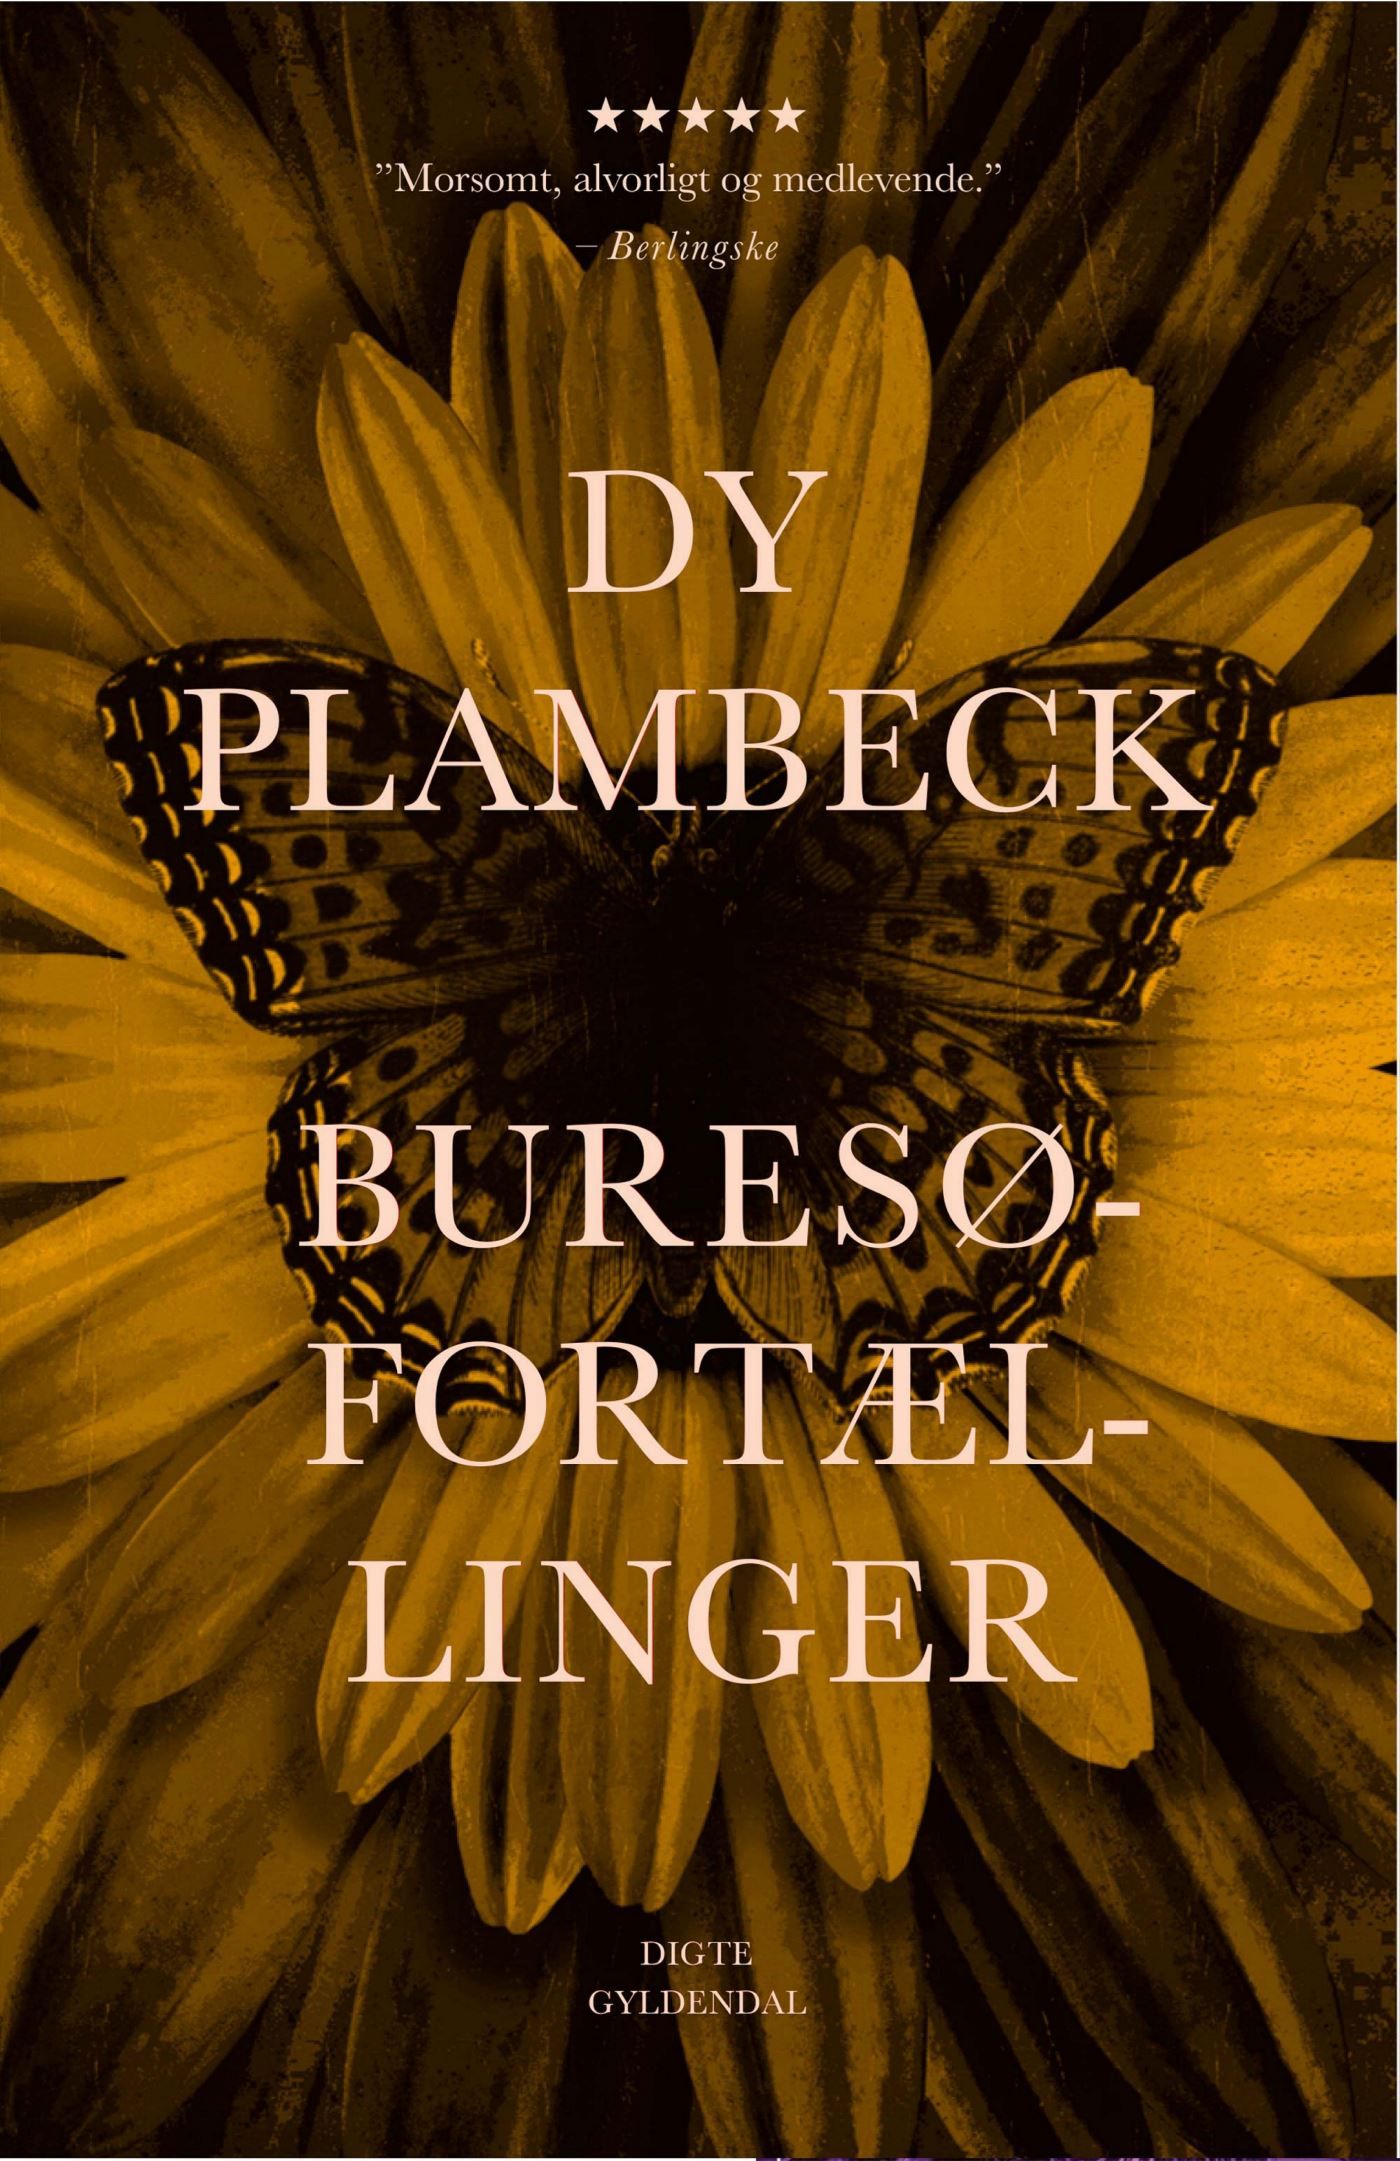 Buresø-fortællinger, audiobook by Dy Plambeck